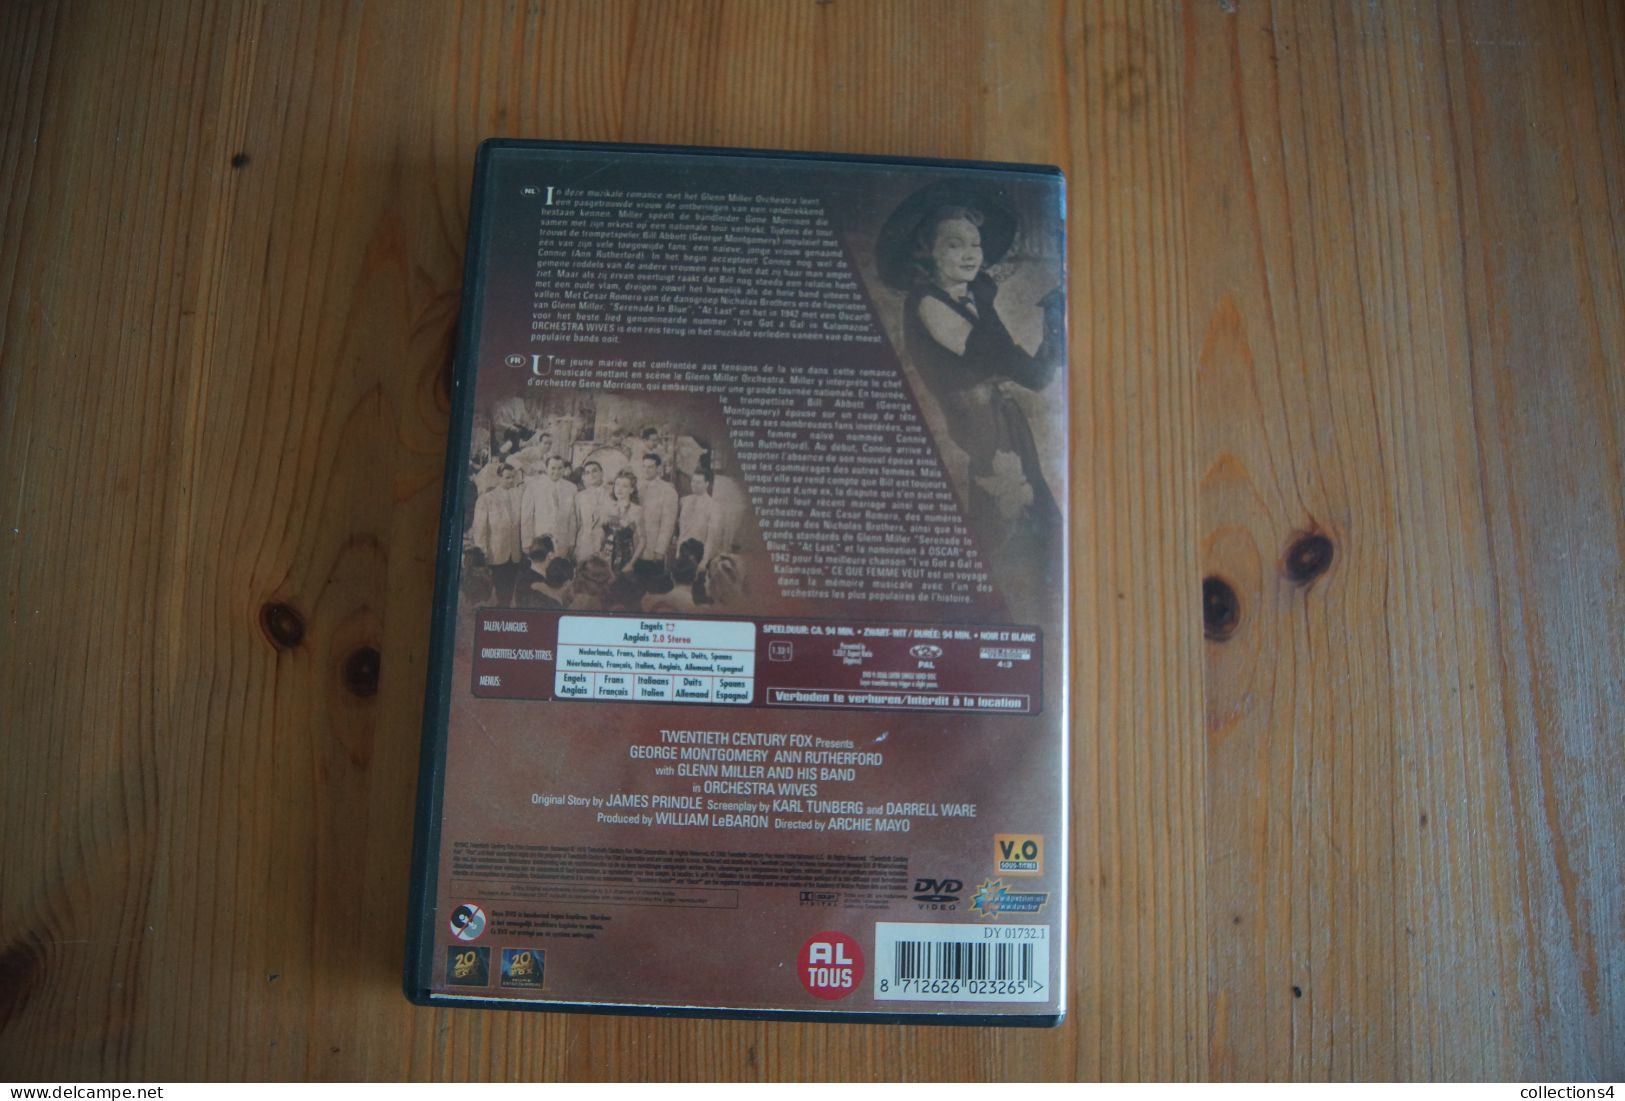 ORCHESTRA WIVES DVD DU FILM DE 1942 GLENN MILLER GEORGE MONTGOMERY ANN RUTHFORD BO TRES JAZZ - DVD Musicali